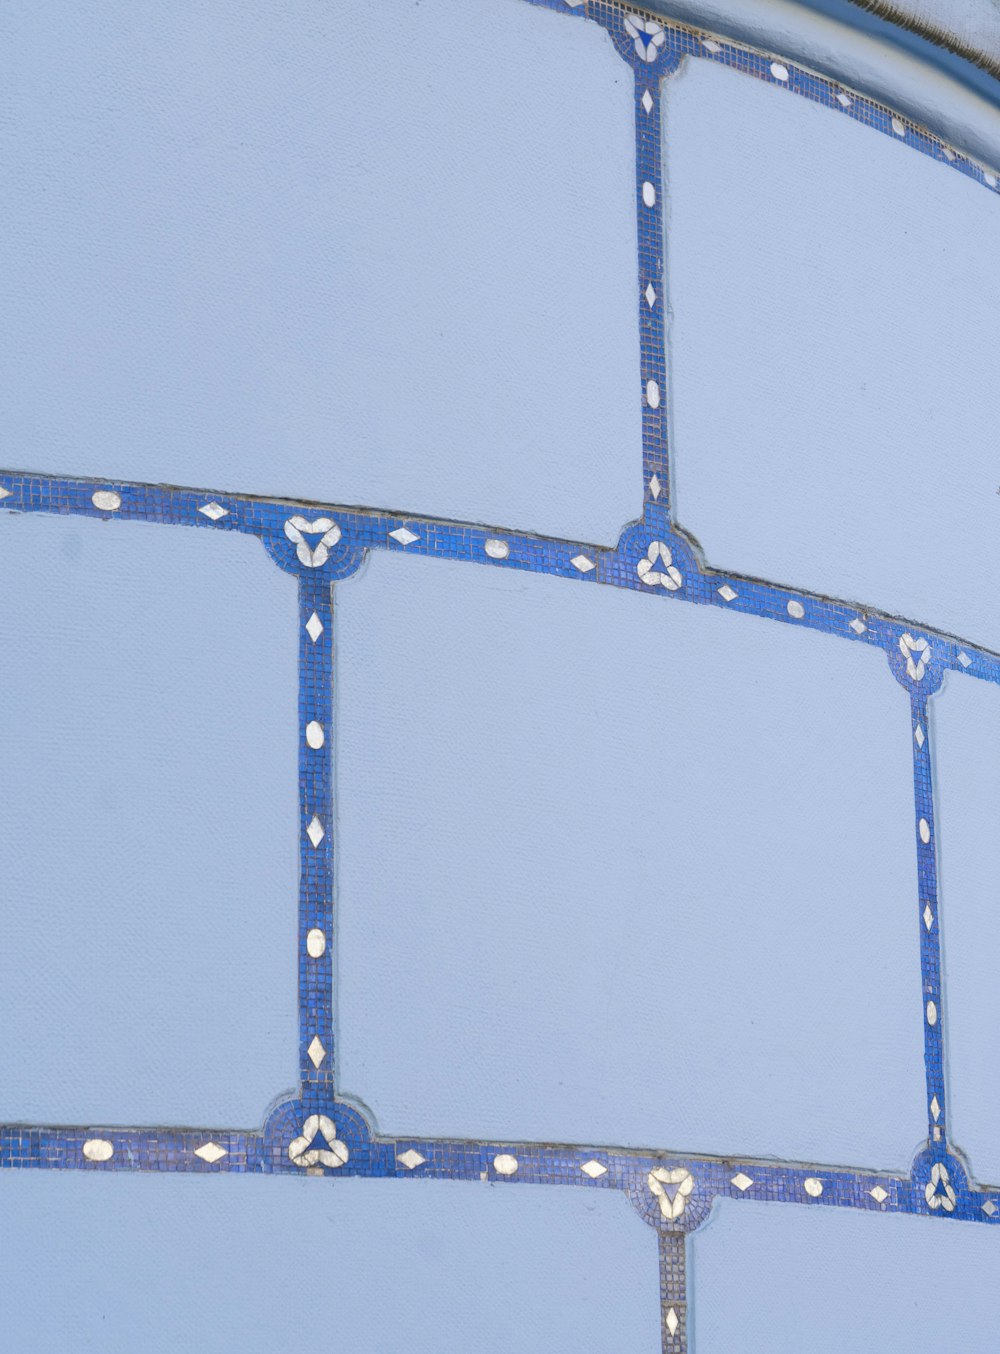 eine Nahaufnahme einer Metallstruktur mit blauer Farbe